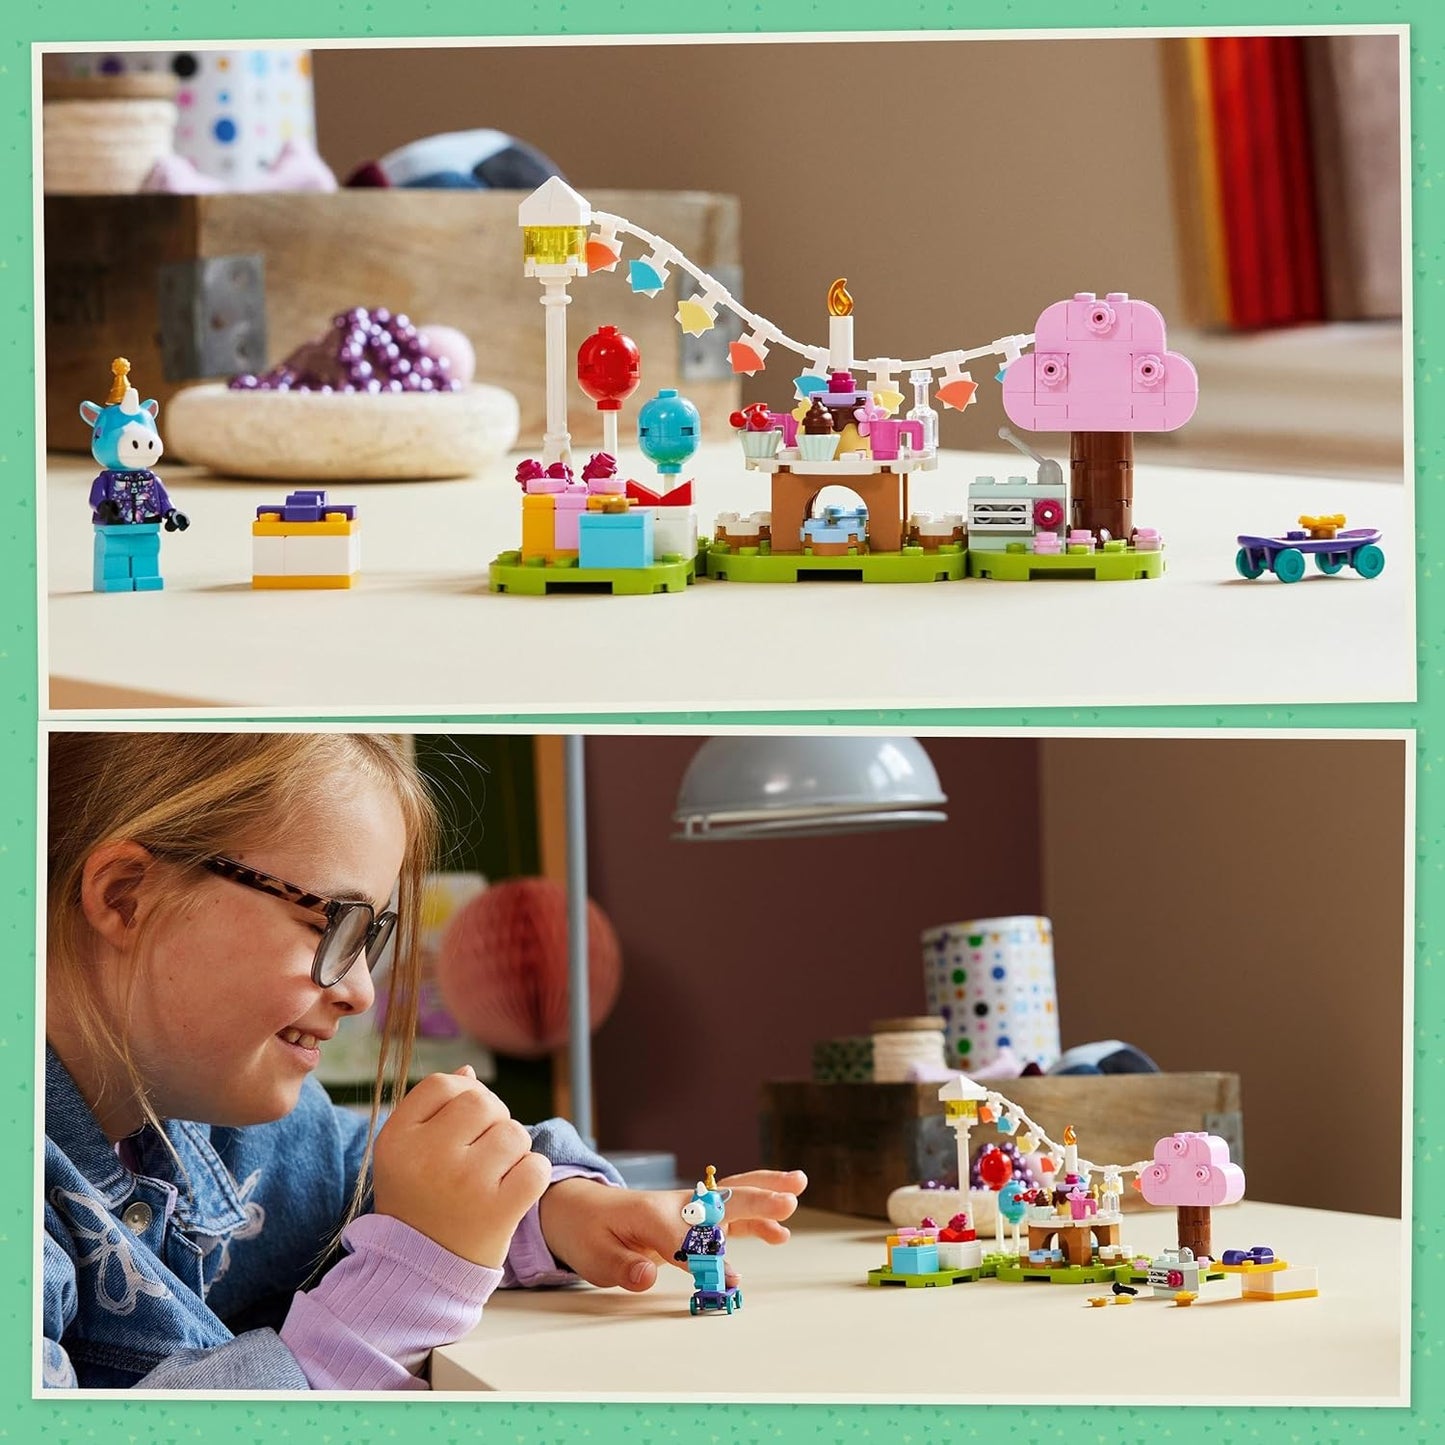 LEGO Brinquedo de construção criativa para festa de aniversário de Julian Crossing de Animal para crianças, meninas e meninos com mais de 6 anos, com minifigura de cavalo Julian da série de videogames, ideia de presente de aniversário 77046